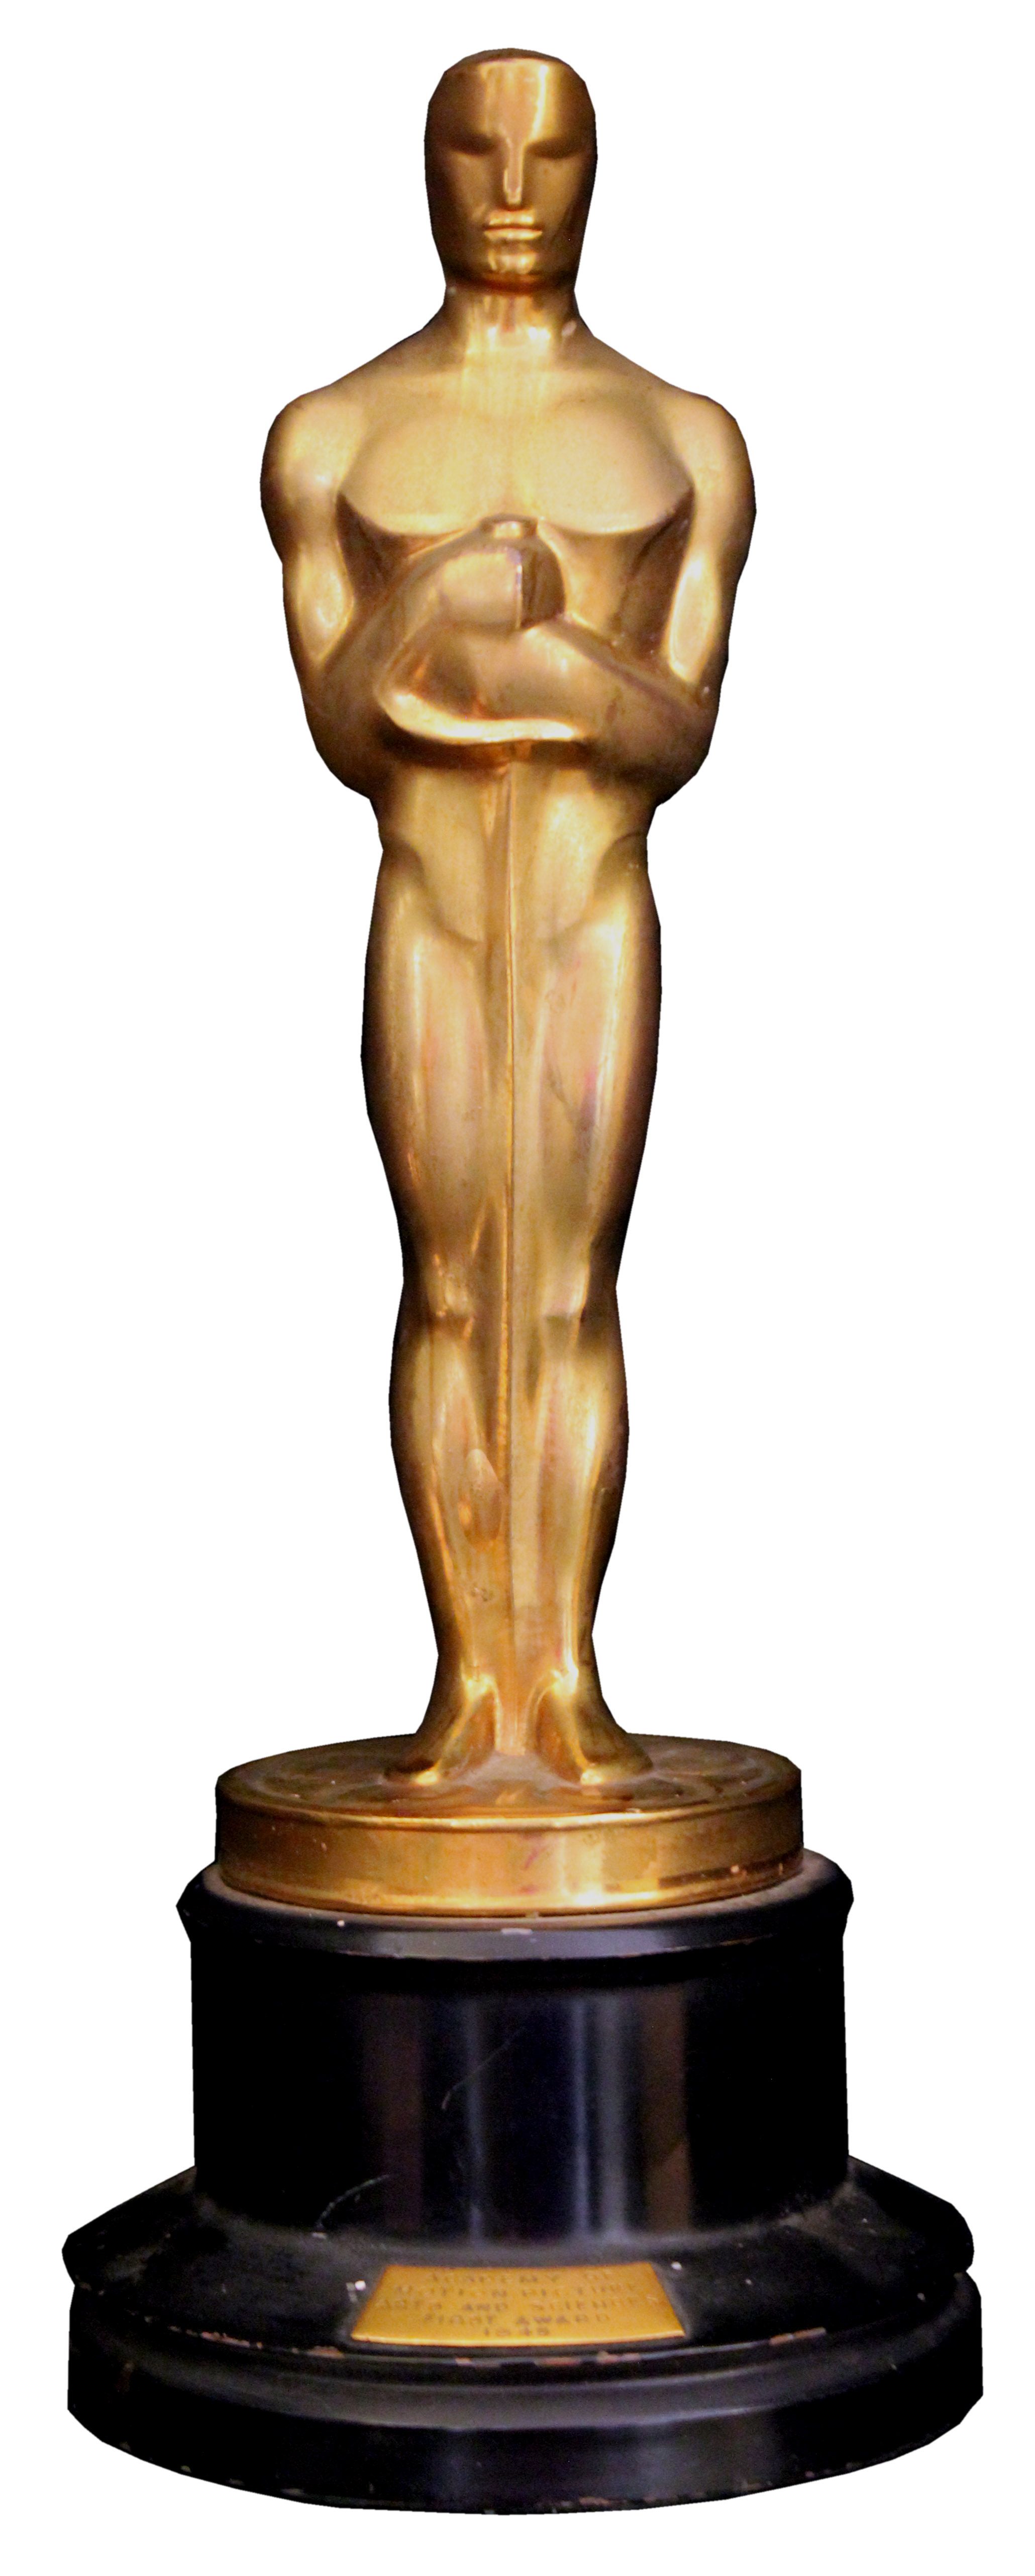 Oscar Award Clipart ClipArt Best